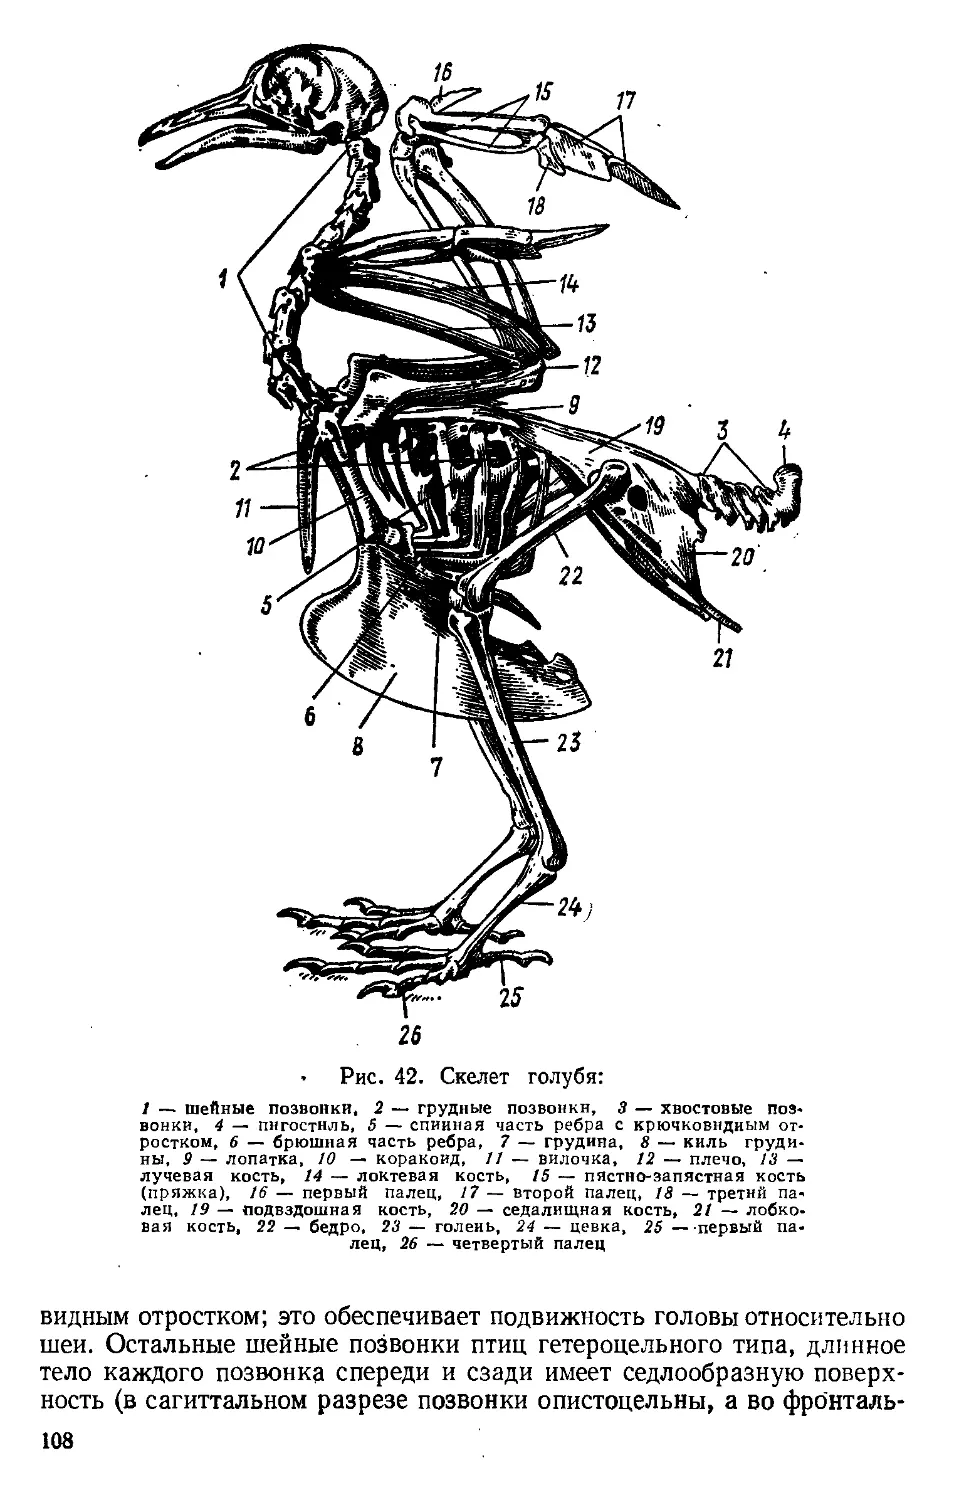 Скелет пояса задних конечностей птиц. Скелет сизого голубя биология. Скелет туловища сизого голубя. Скелет поясов конечностей птиц. Скелет туловища птицы сбоку.